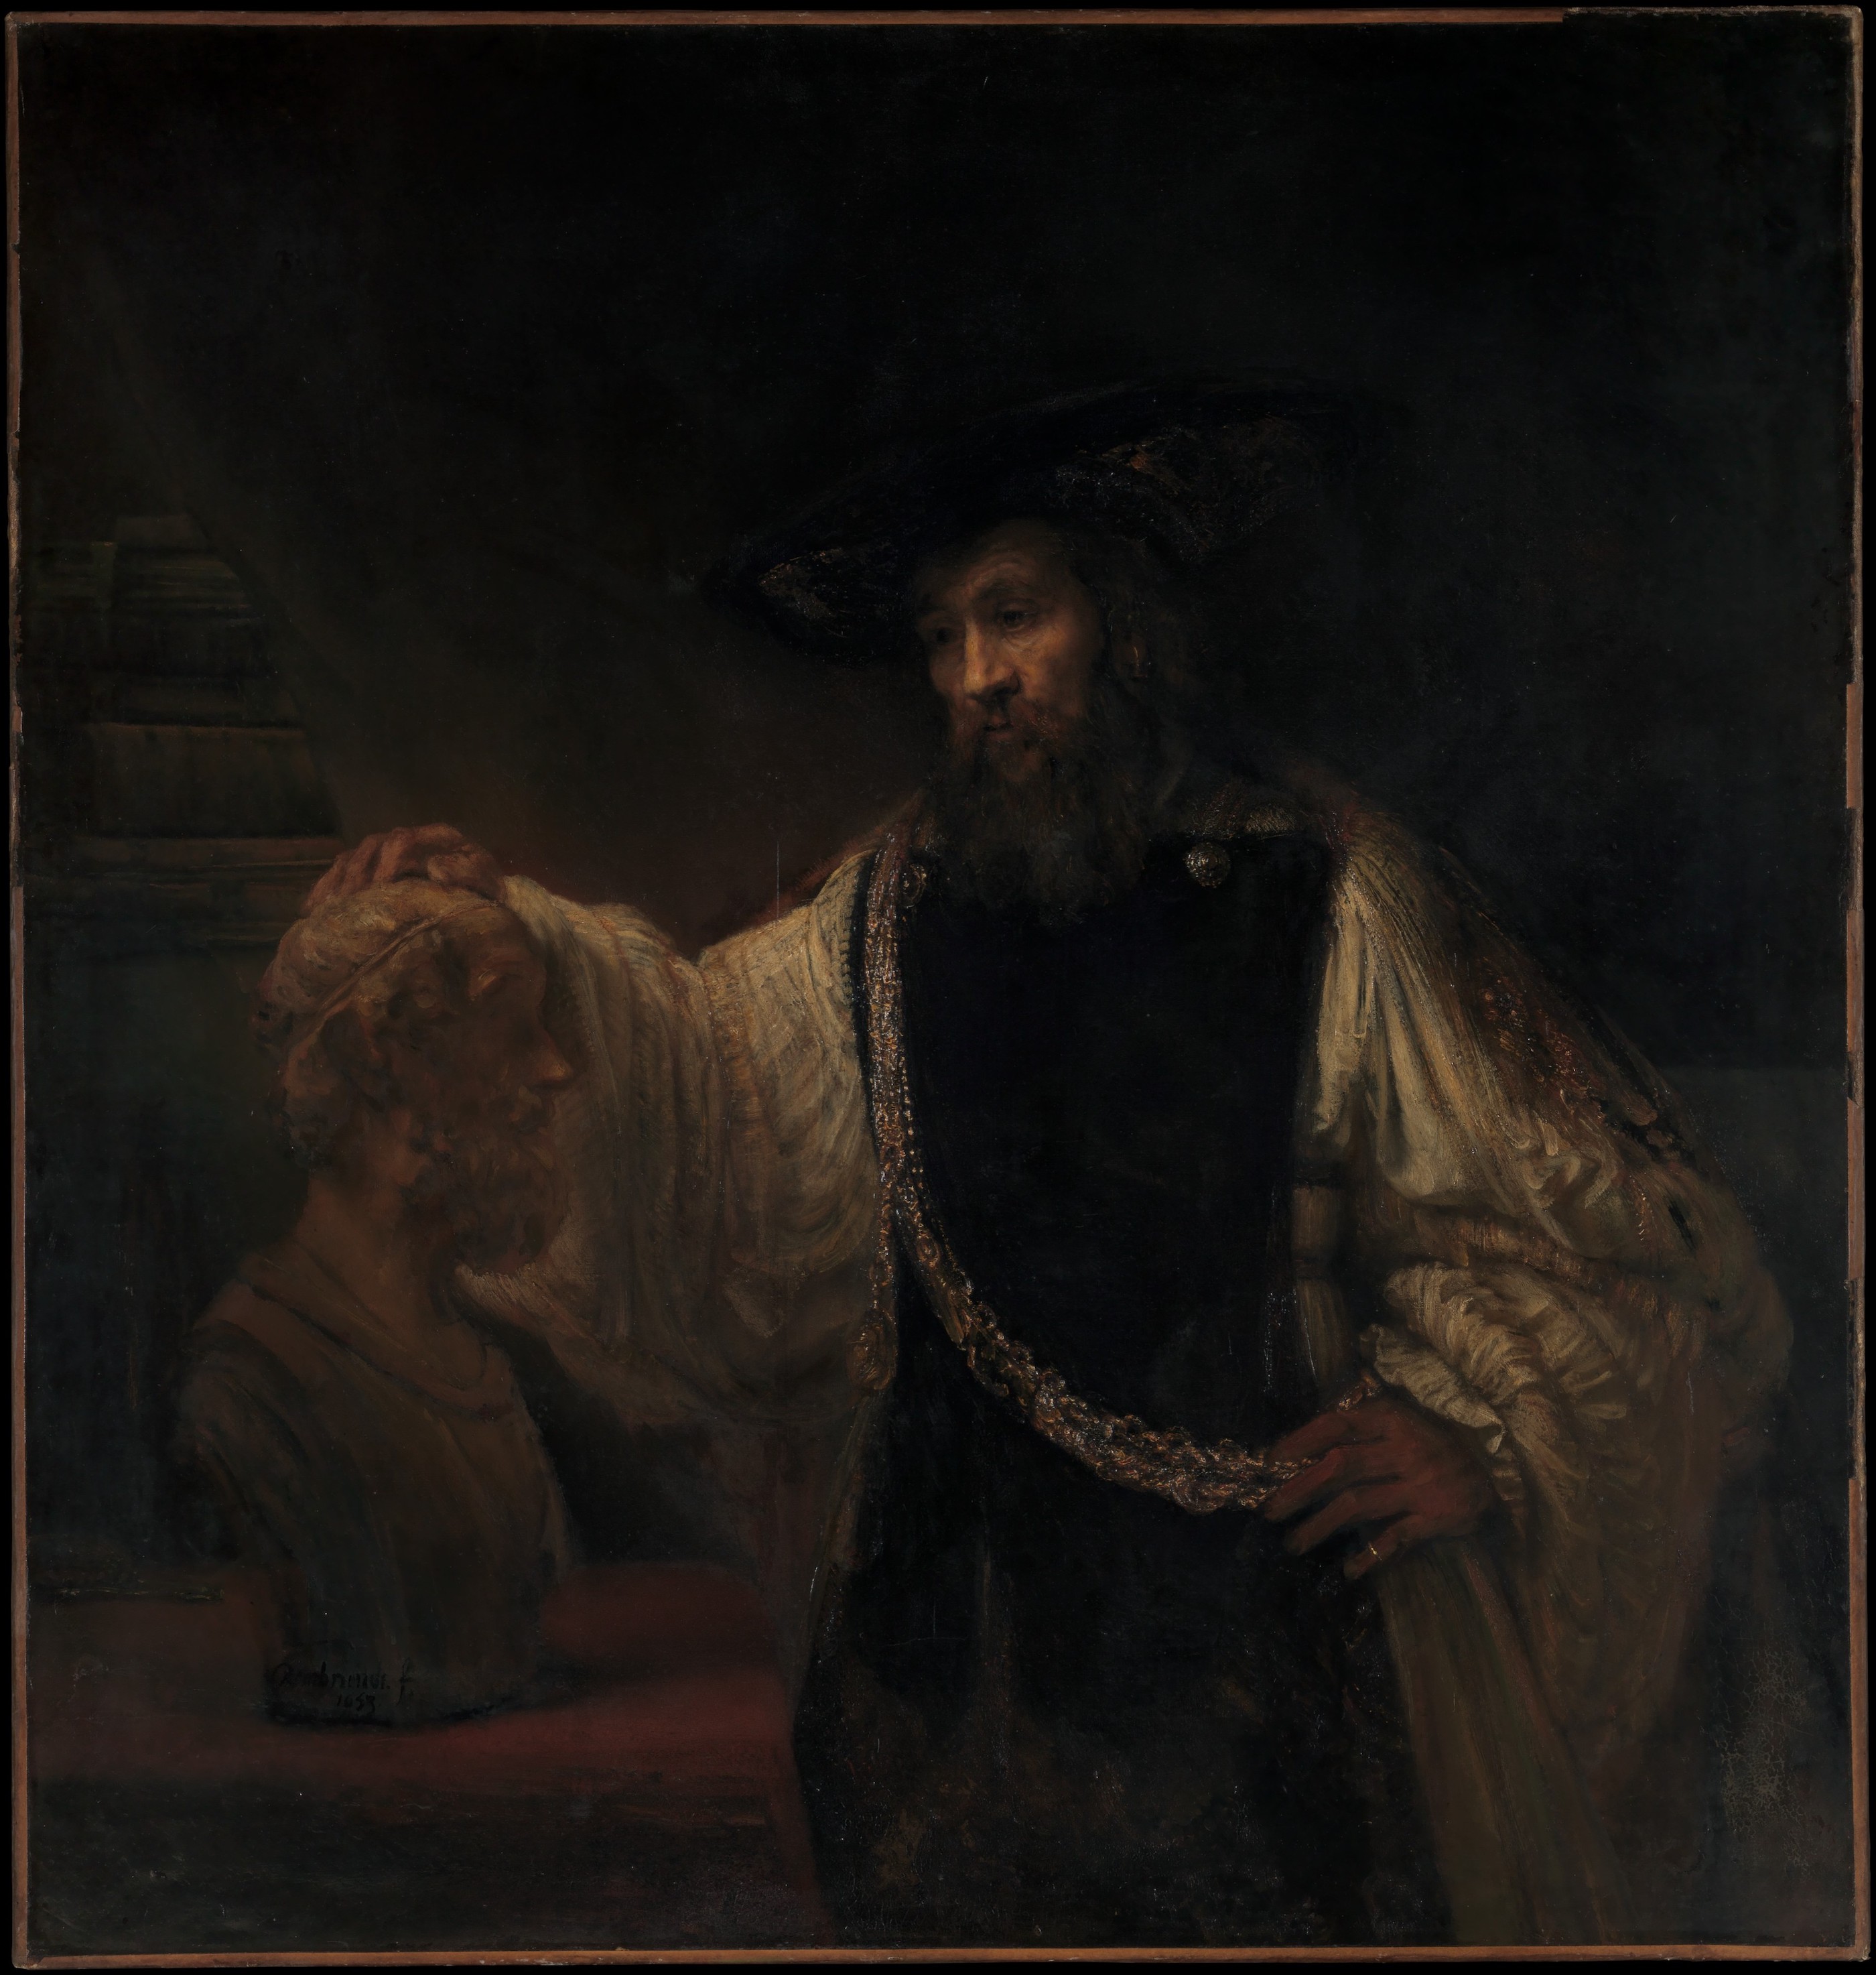 亞里斯多德與荷馬半身像 by Rembrandt van Rijn - 1653 年 - 143.5 × 136.5 釐米 